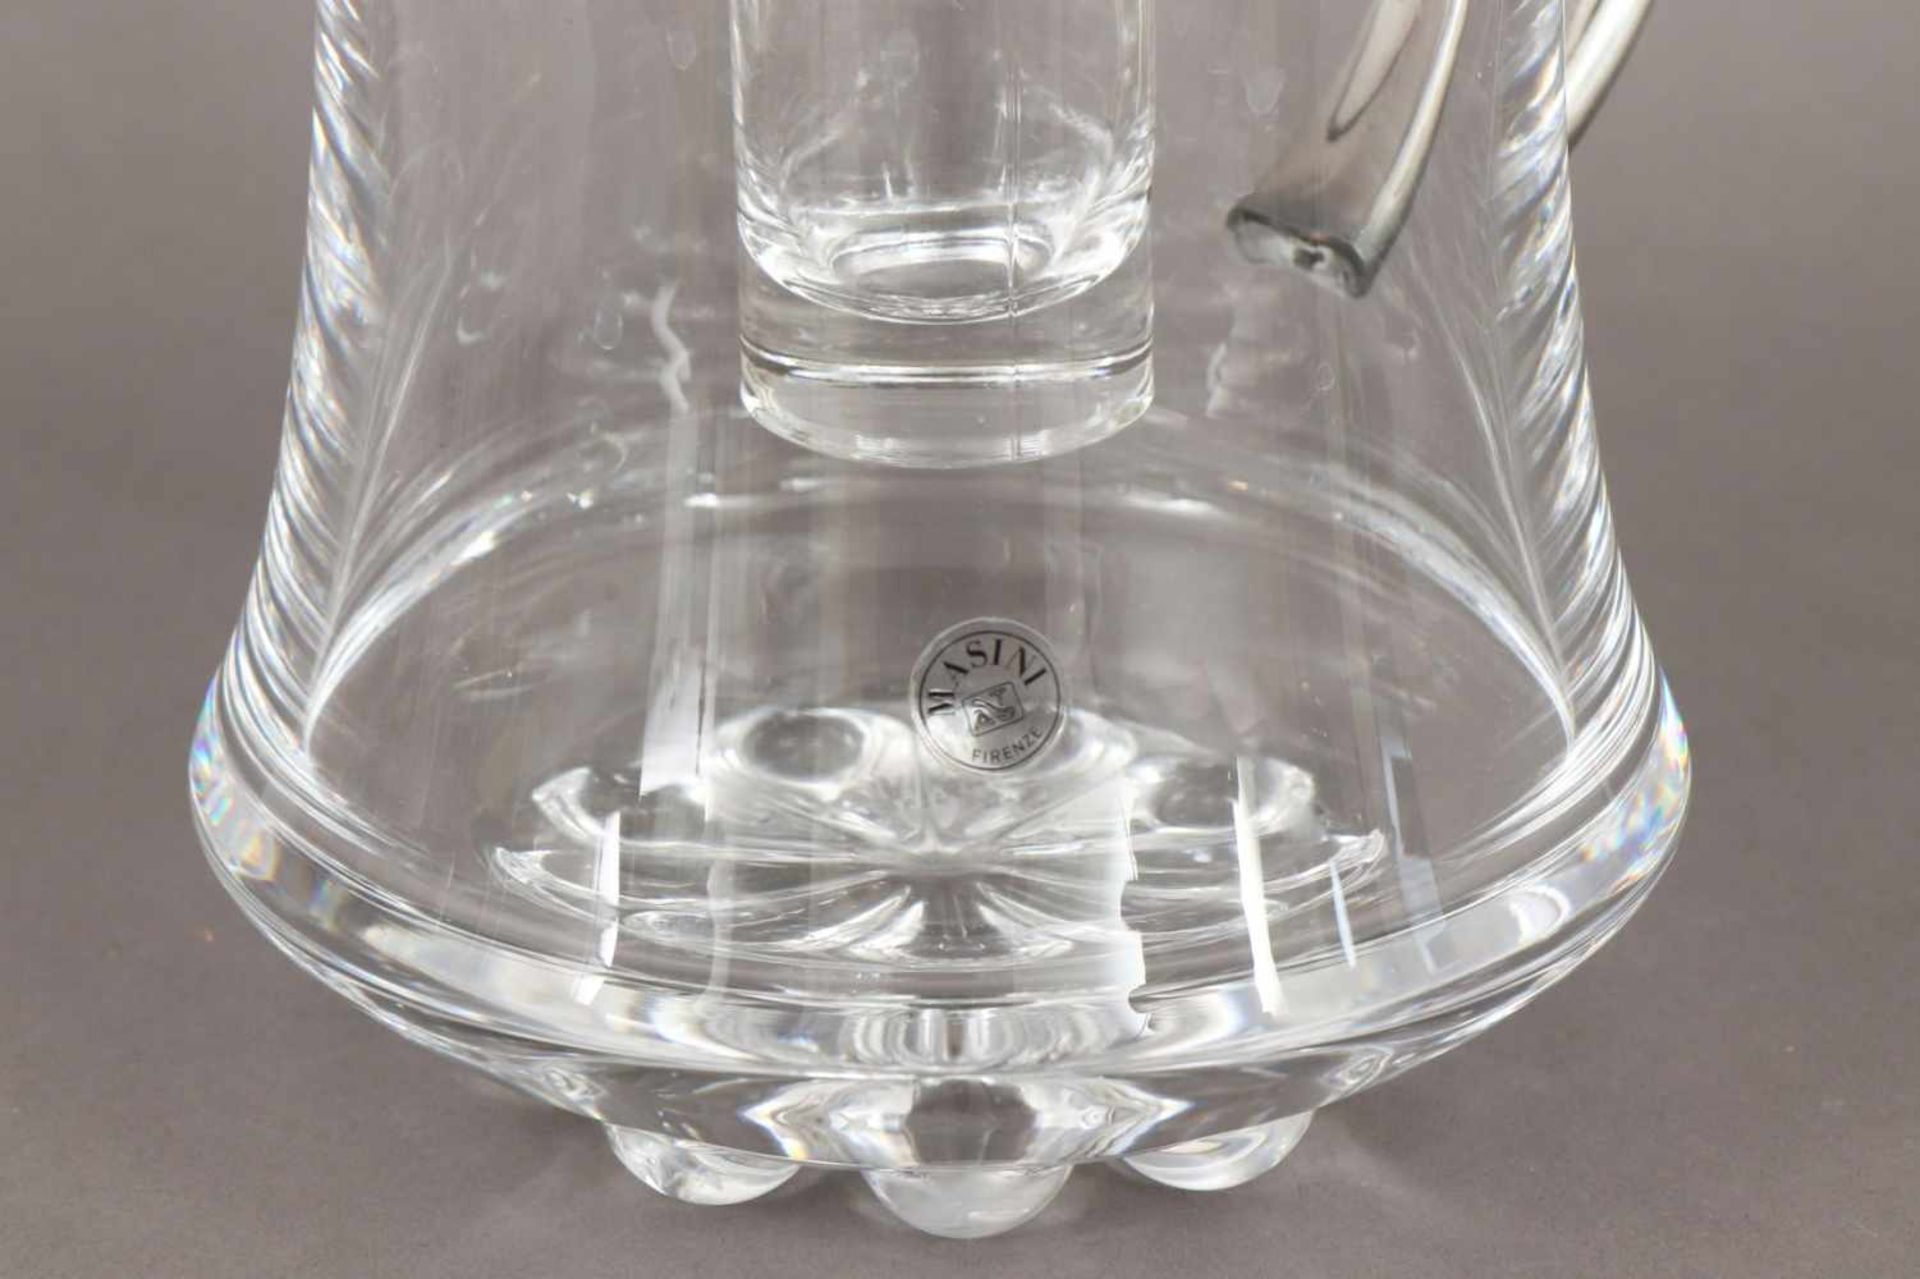 Schenkkrug, MASINI Firenze Kristall und versilbertes Metall, farbloser Glaszylinder mit Eis- - Bild 2 aus 2